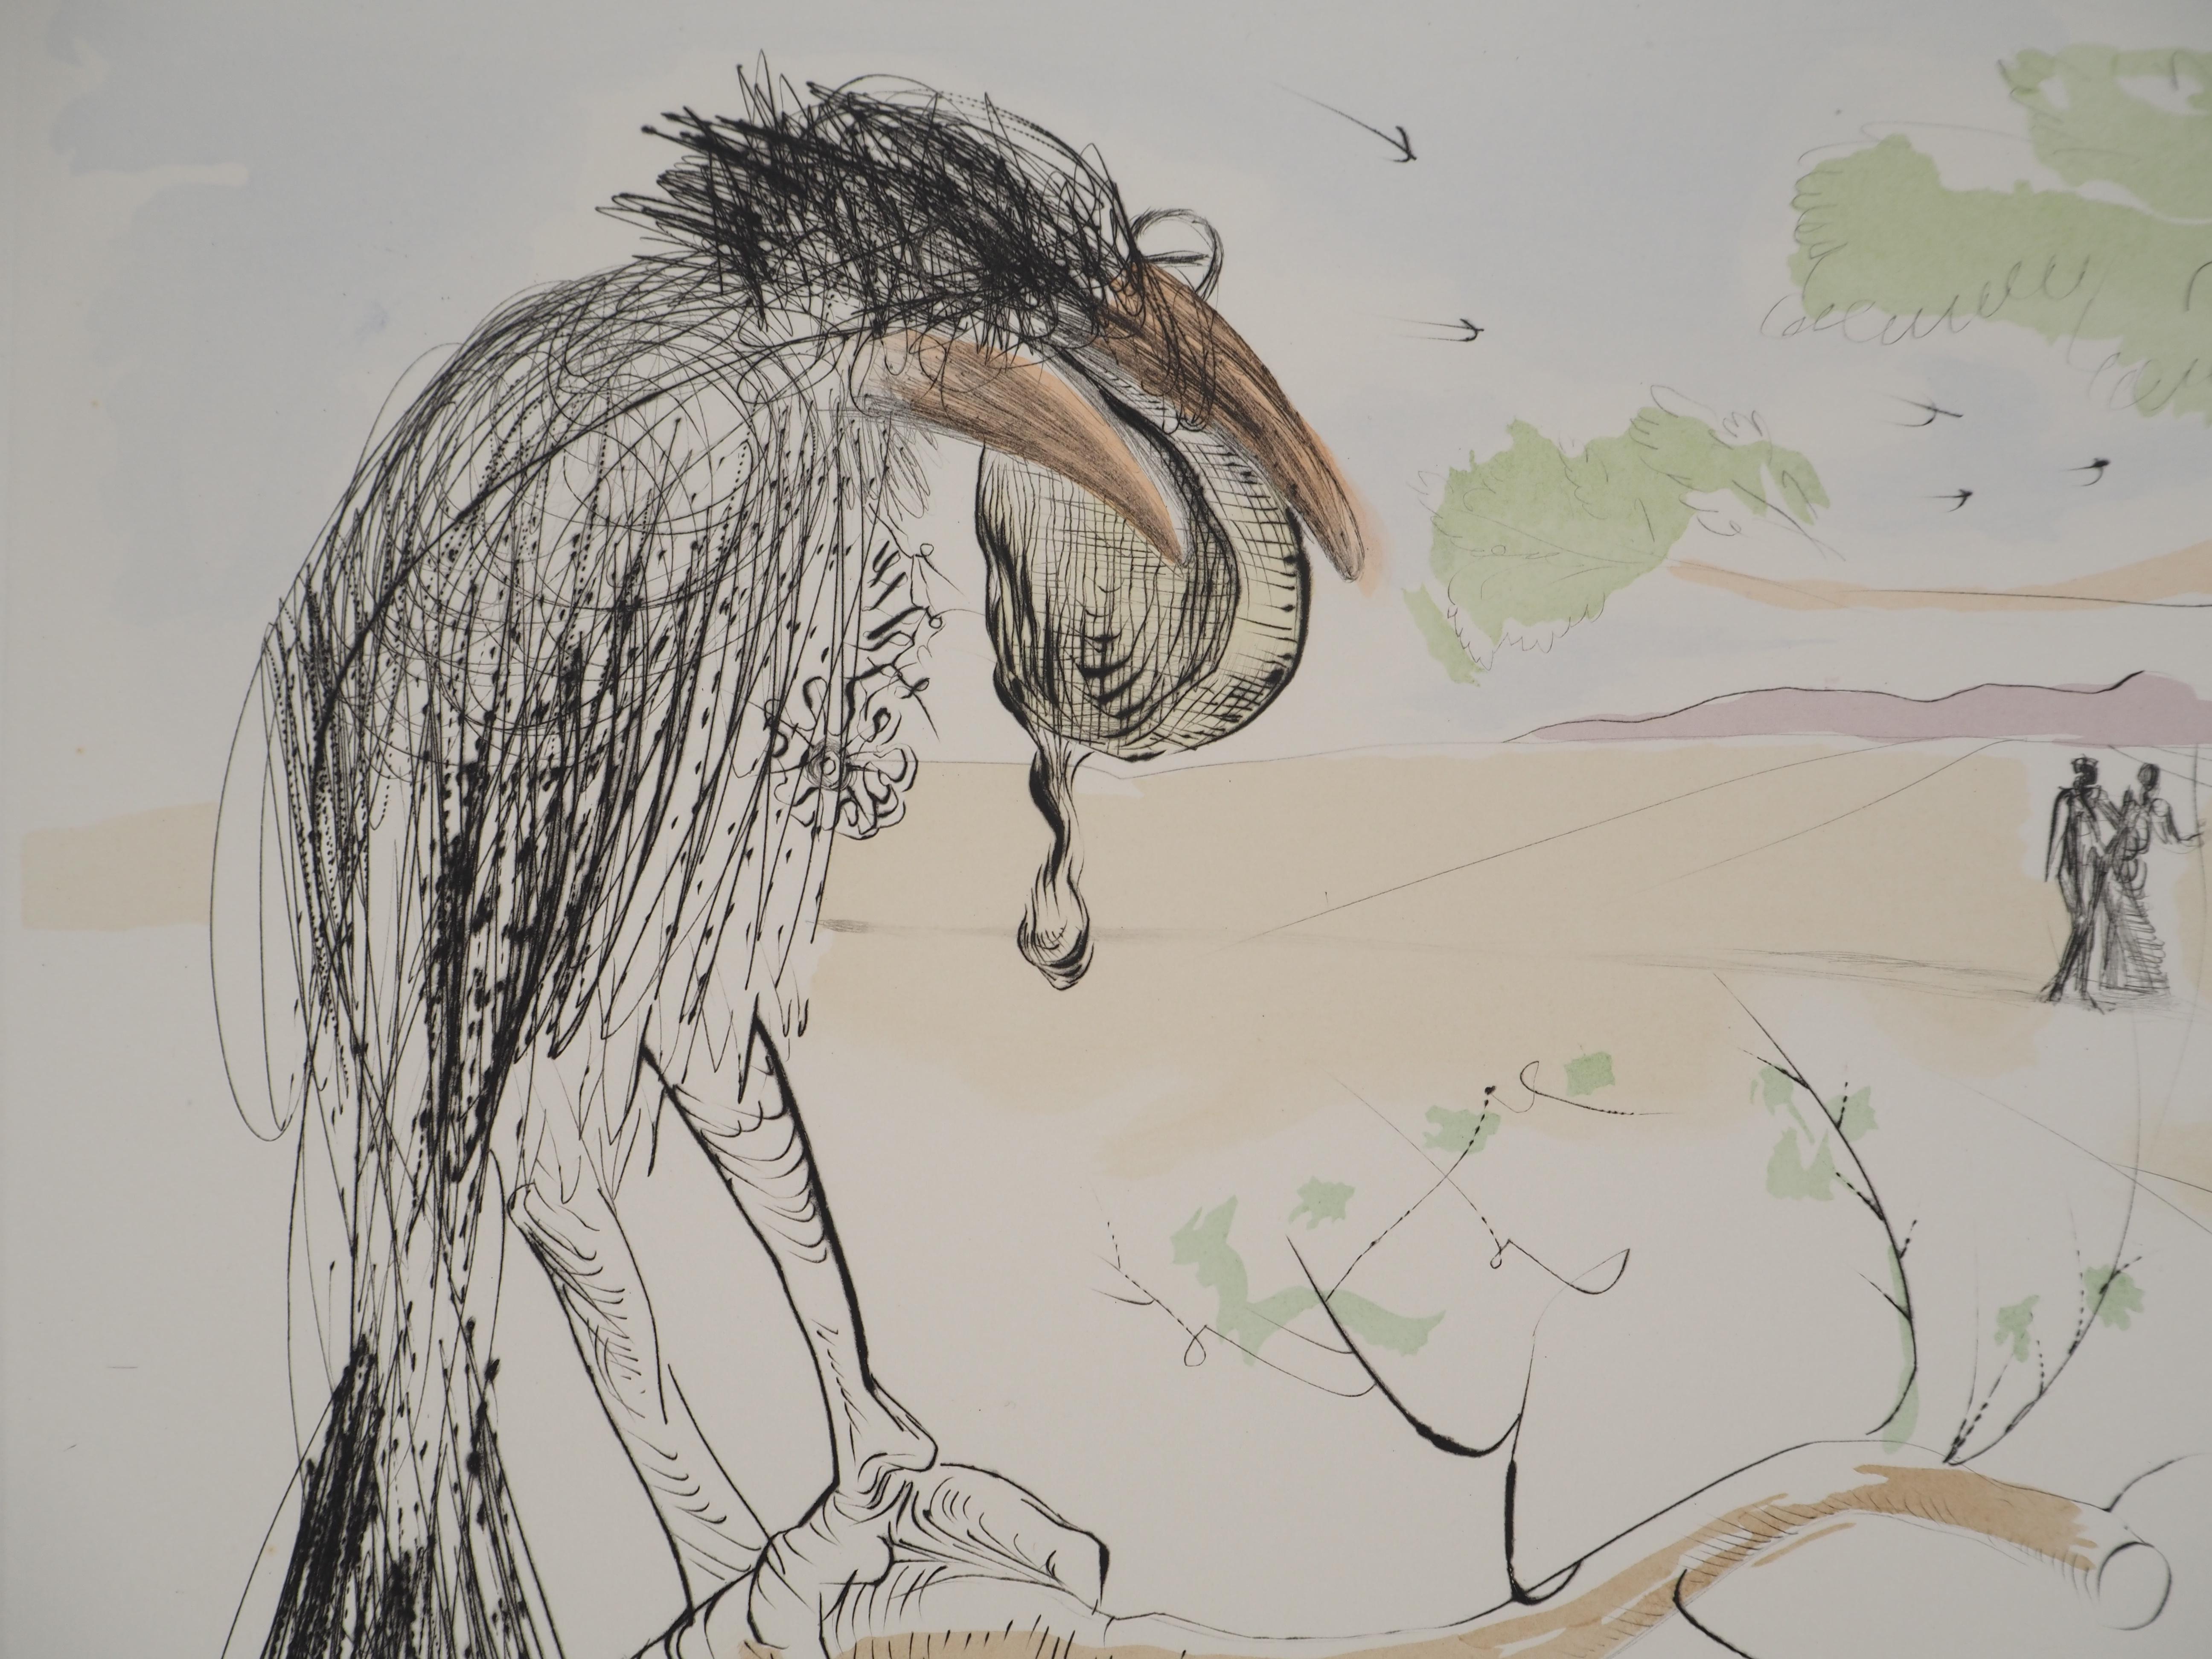 Salvador Dali
Le corbeau et le renard, 1974

Gravure originale à la pointe sèche avec rehaussement au pochoir (Atelier Rigal)
Signé au crayon 
Limité à 250 exemplaires (ici numérotés 183)
Sur vélin d'Arches  76 x 56 cm (c. 29.9 x 22 in)

REFERENCES